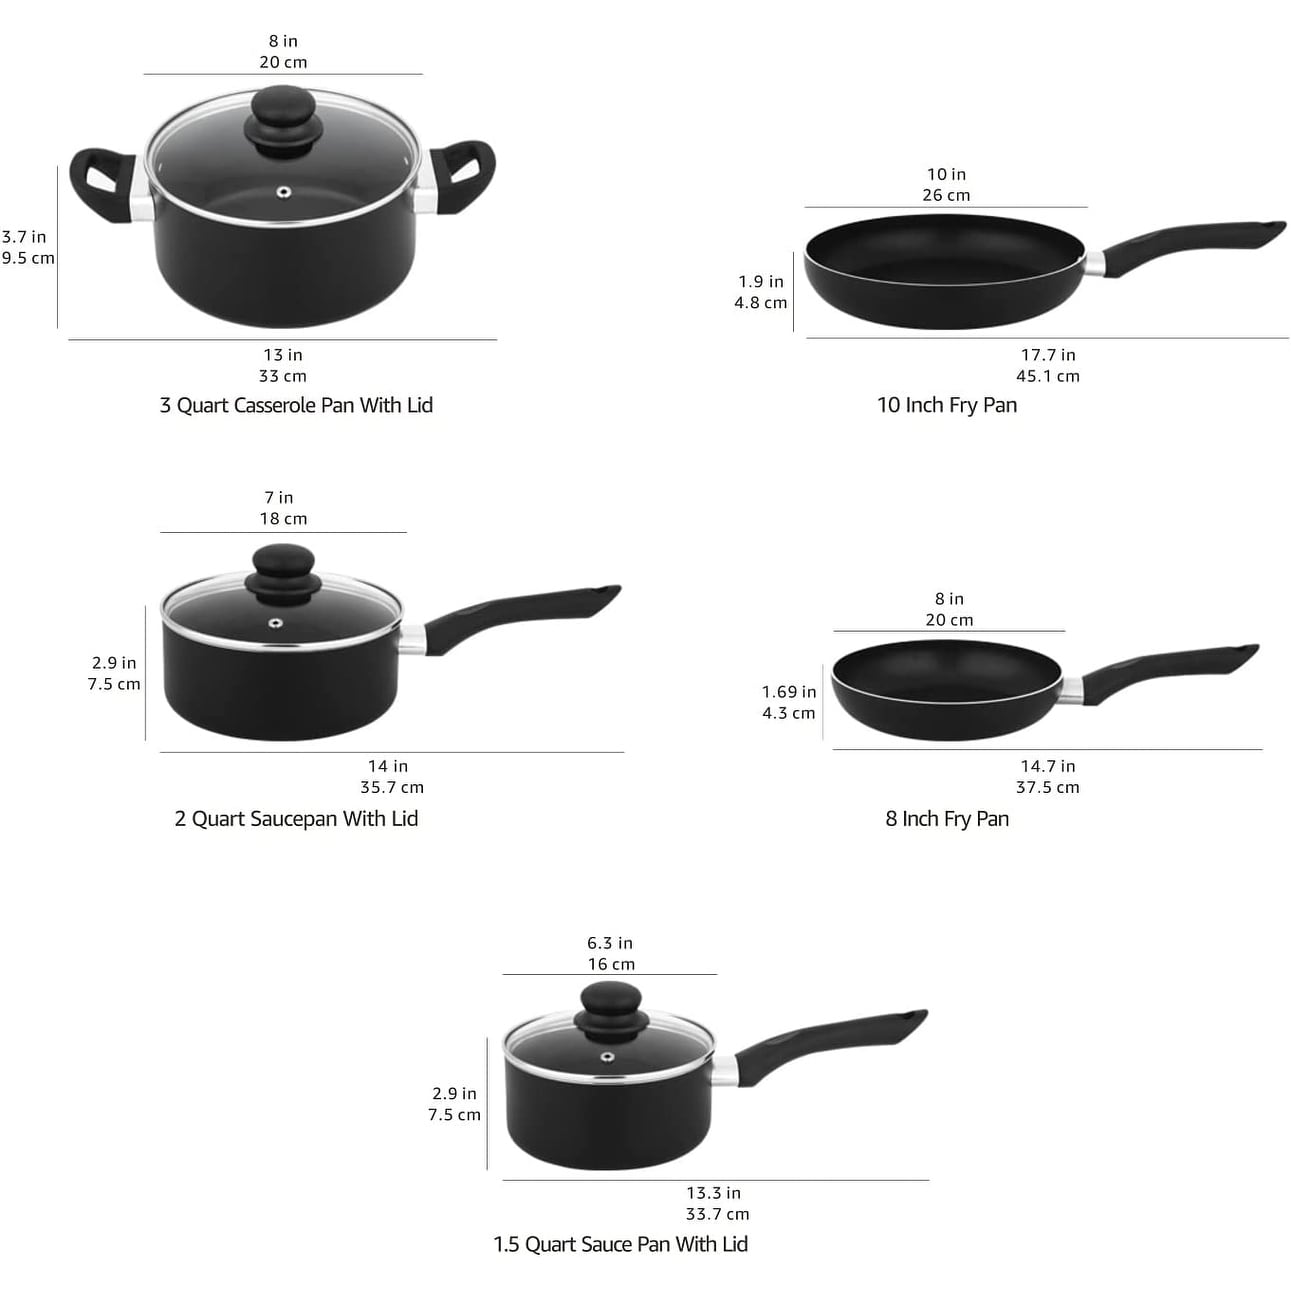 https://ak1.ostkcdn.com/images/products/is/images/direct/043f3204ce67ff73b469a23ce18de96c03813101/Non-Stick-Cookware-Set%2C-Pots-and-Pans---8-Piece-Set.jpg